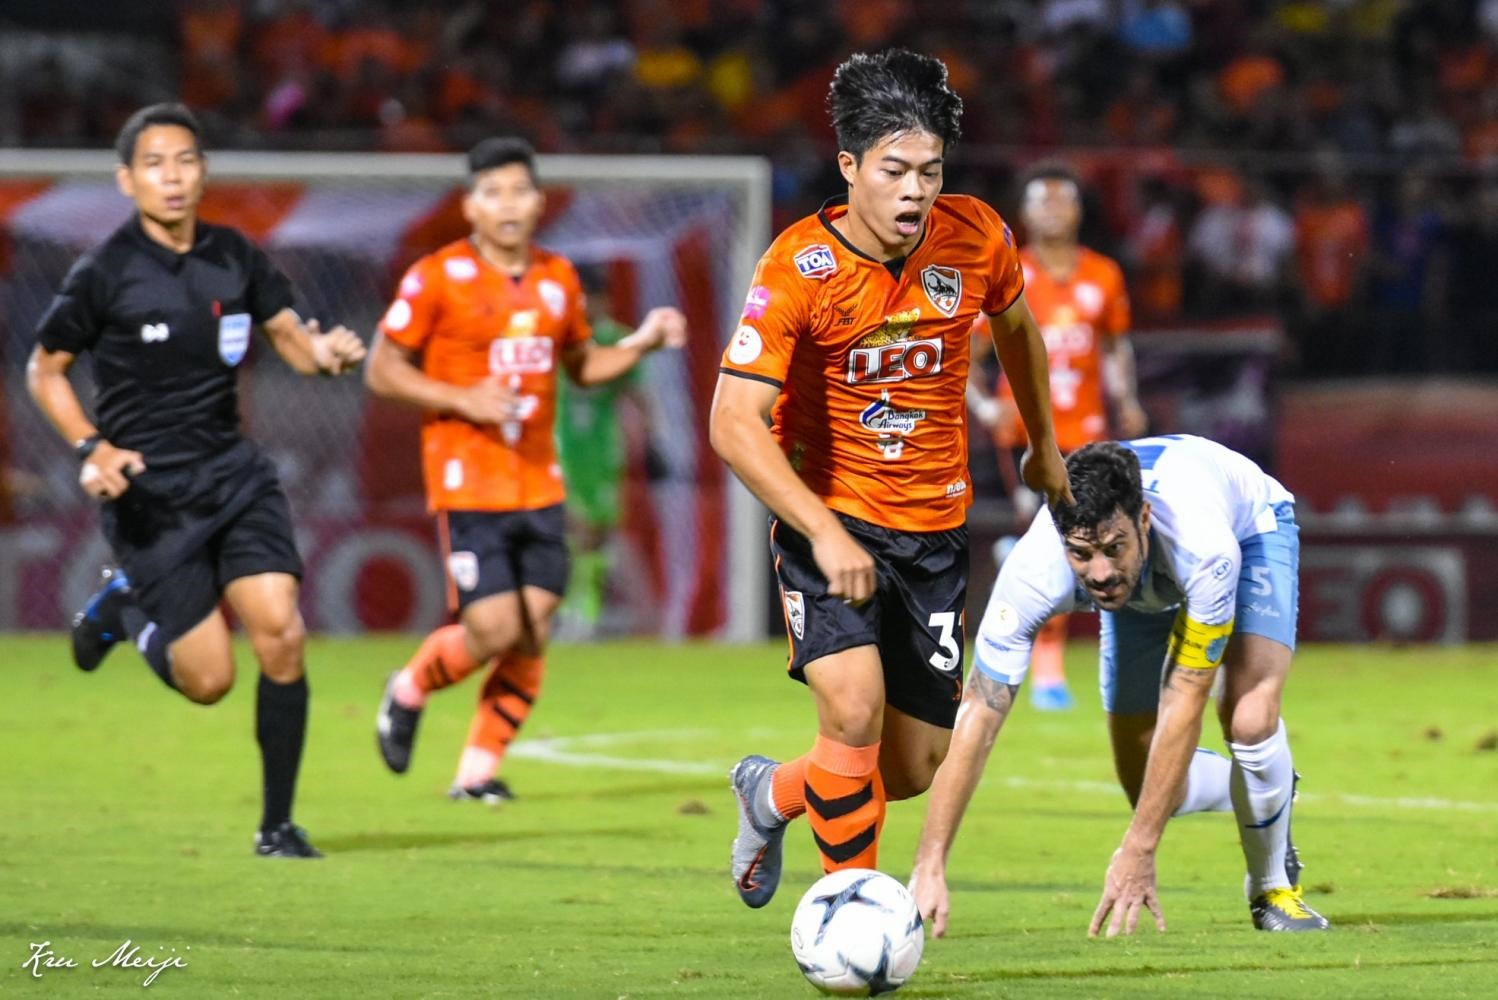 Ekanit Panya là hạt nhân giúp Chiang Rai United vô địch Thai League 2019. Ảnh: Bangkok Post.